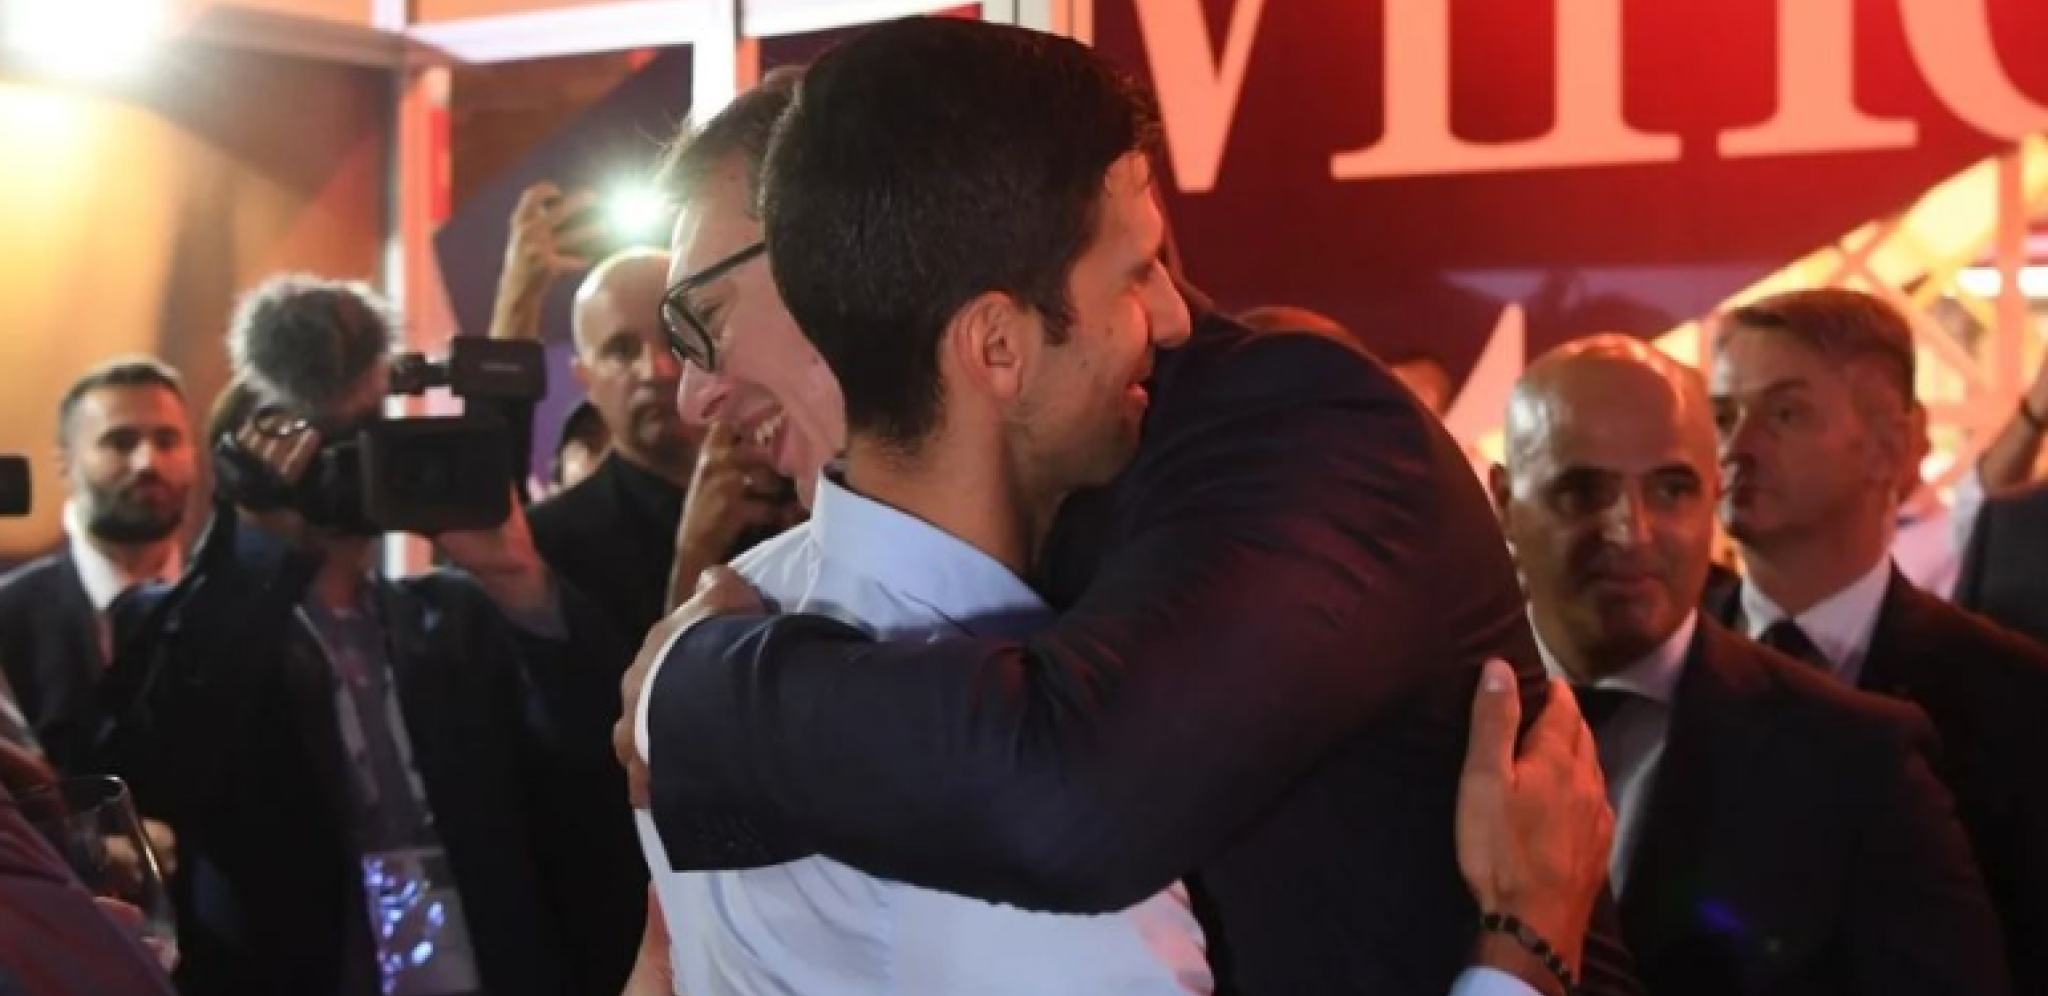 SUSRET SA ŠAMPIONOM Aleksandar Vučić u zagrljaju Novaka Đokovića na Prvom međunarodnom sajmu vina "Vinska vizija Otvorenog Balkana" (FOTO+VIDEO)